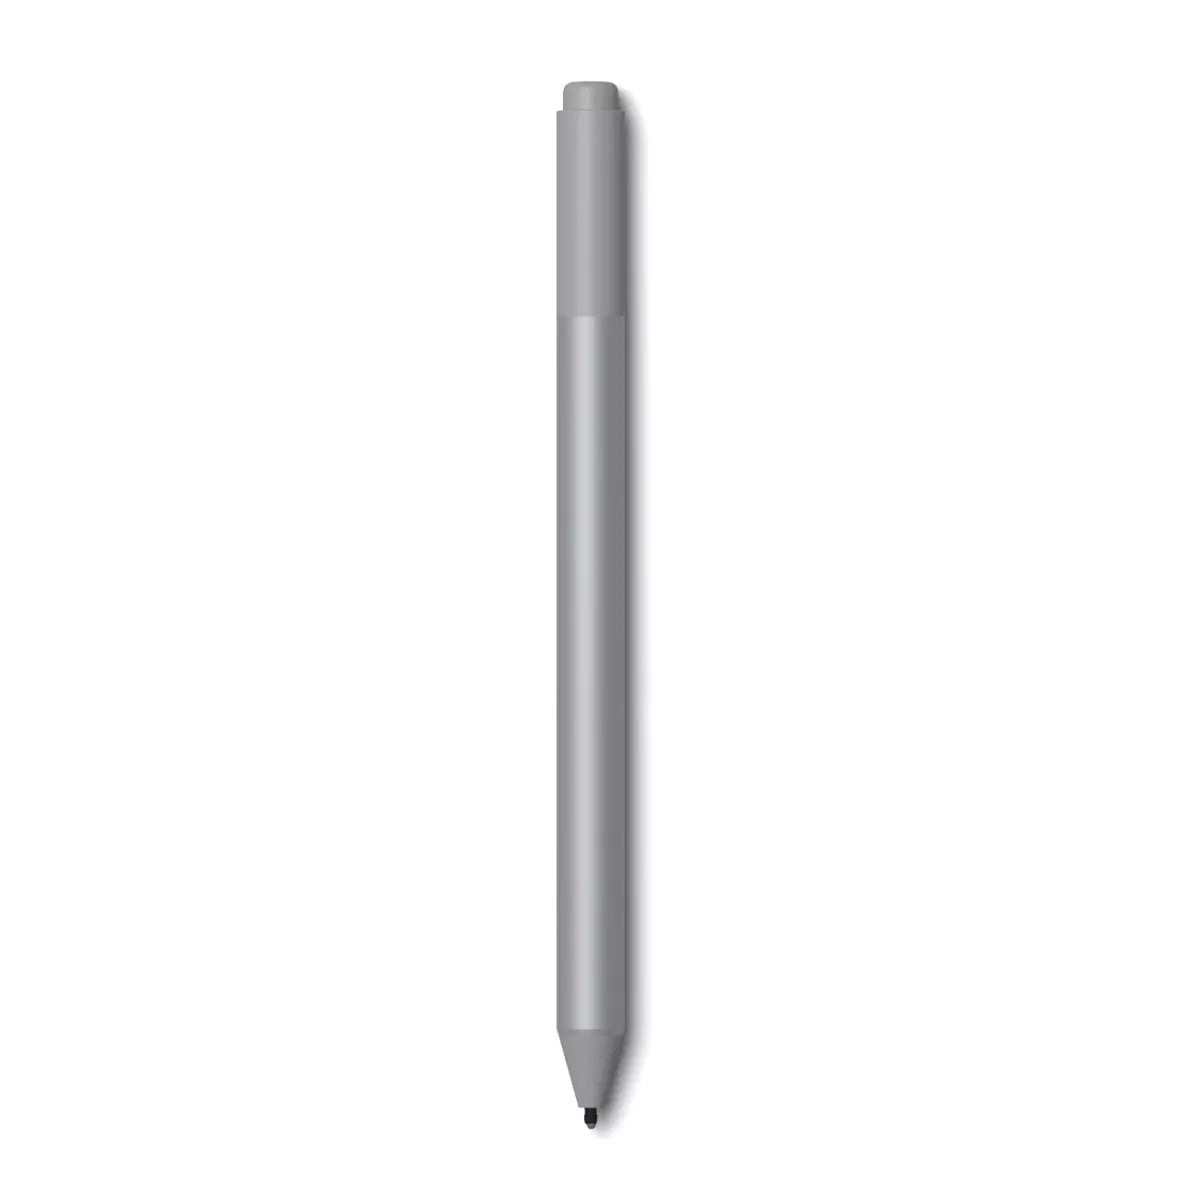 Microsoft Surface Pen Modell 1776 Erstellen, gestalten und vereinfachen Sie Ihren kreativen Prozess – alles drahtlos